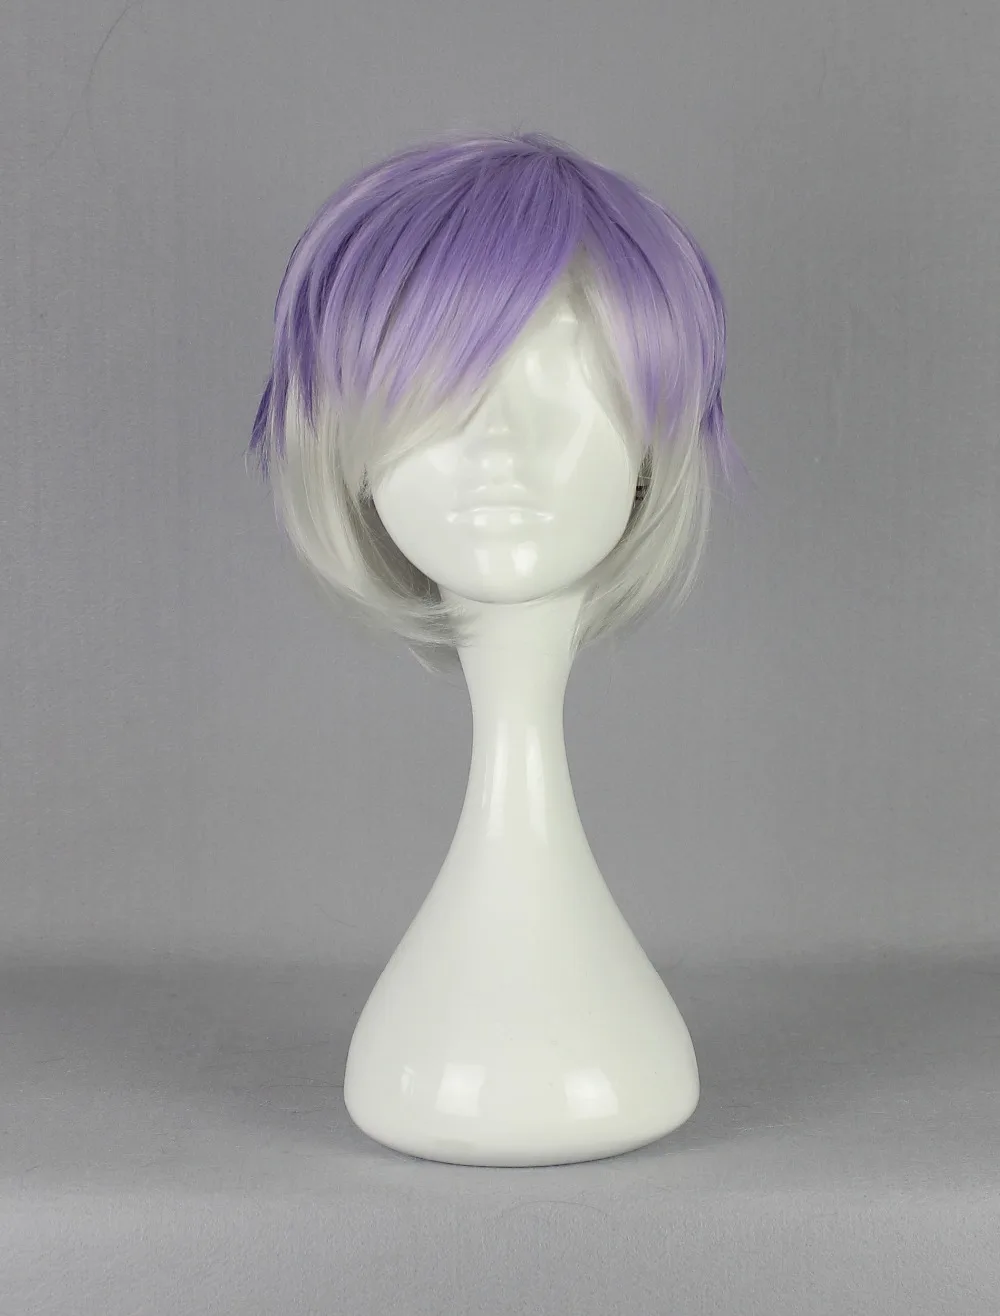 Sakamaki Kanato аксессуары для волос-Diabolik Lovers аксессуары для волос фиолетовые Мужские Diabolik Lovers косплей аксессуары для волос